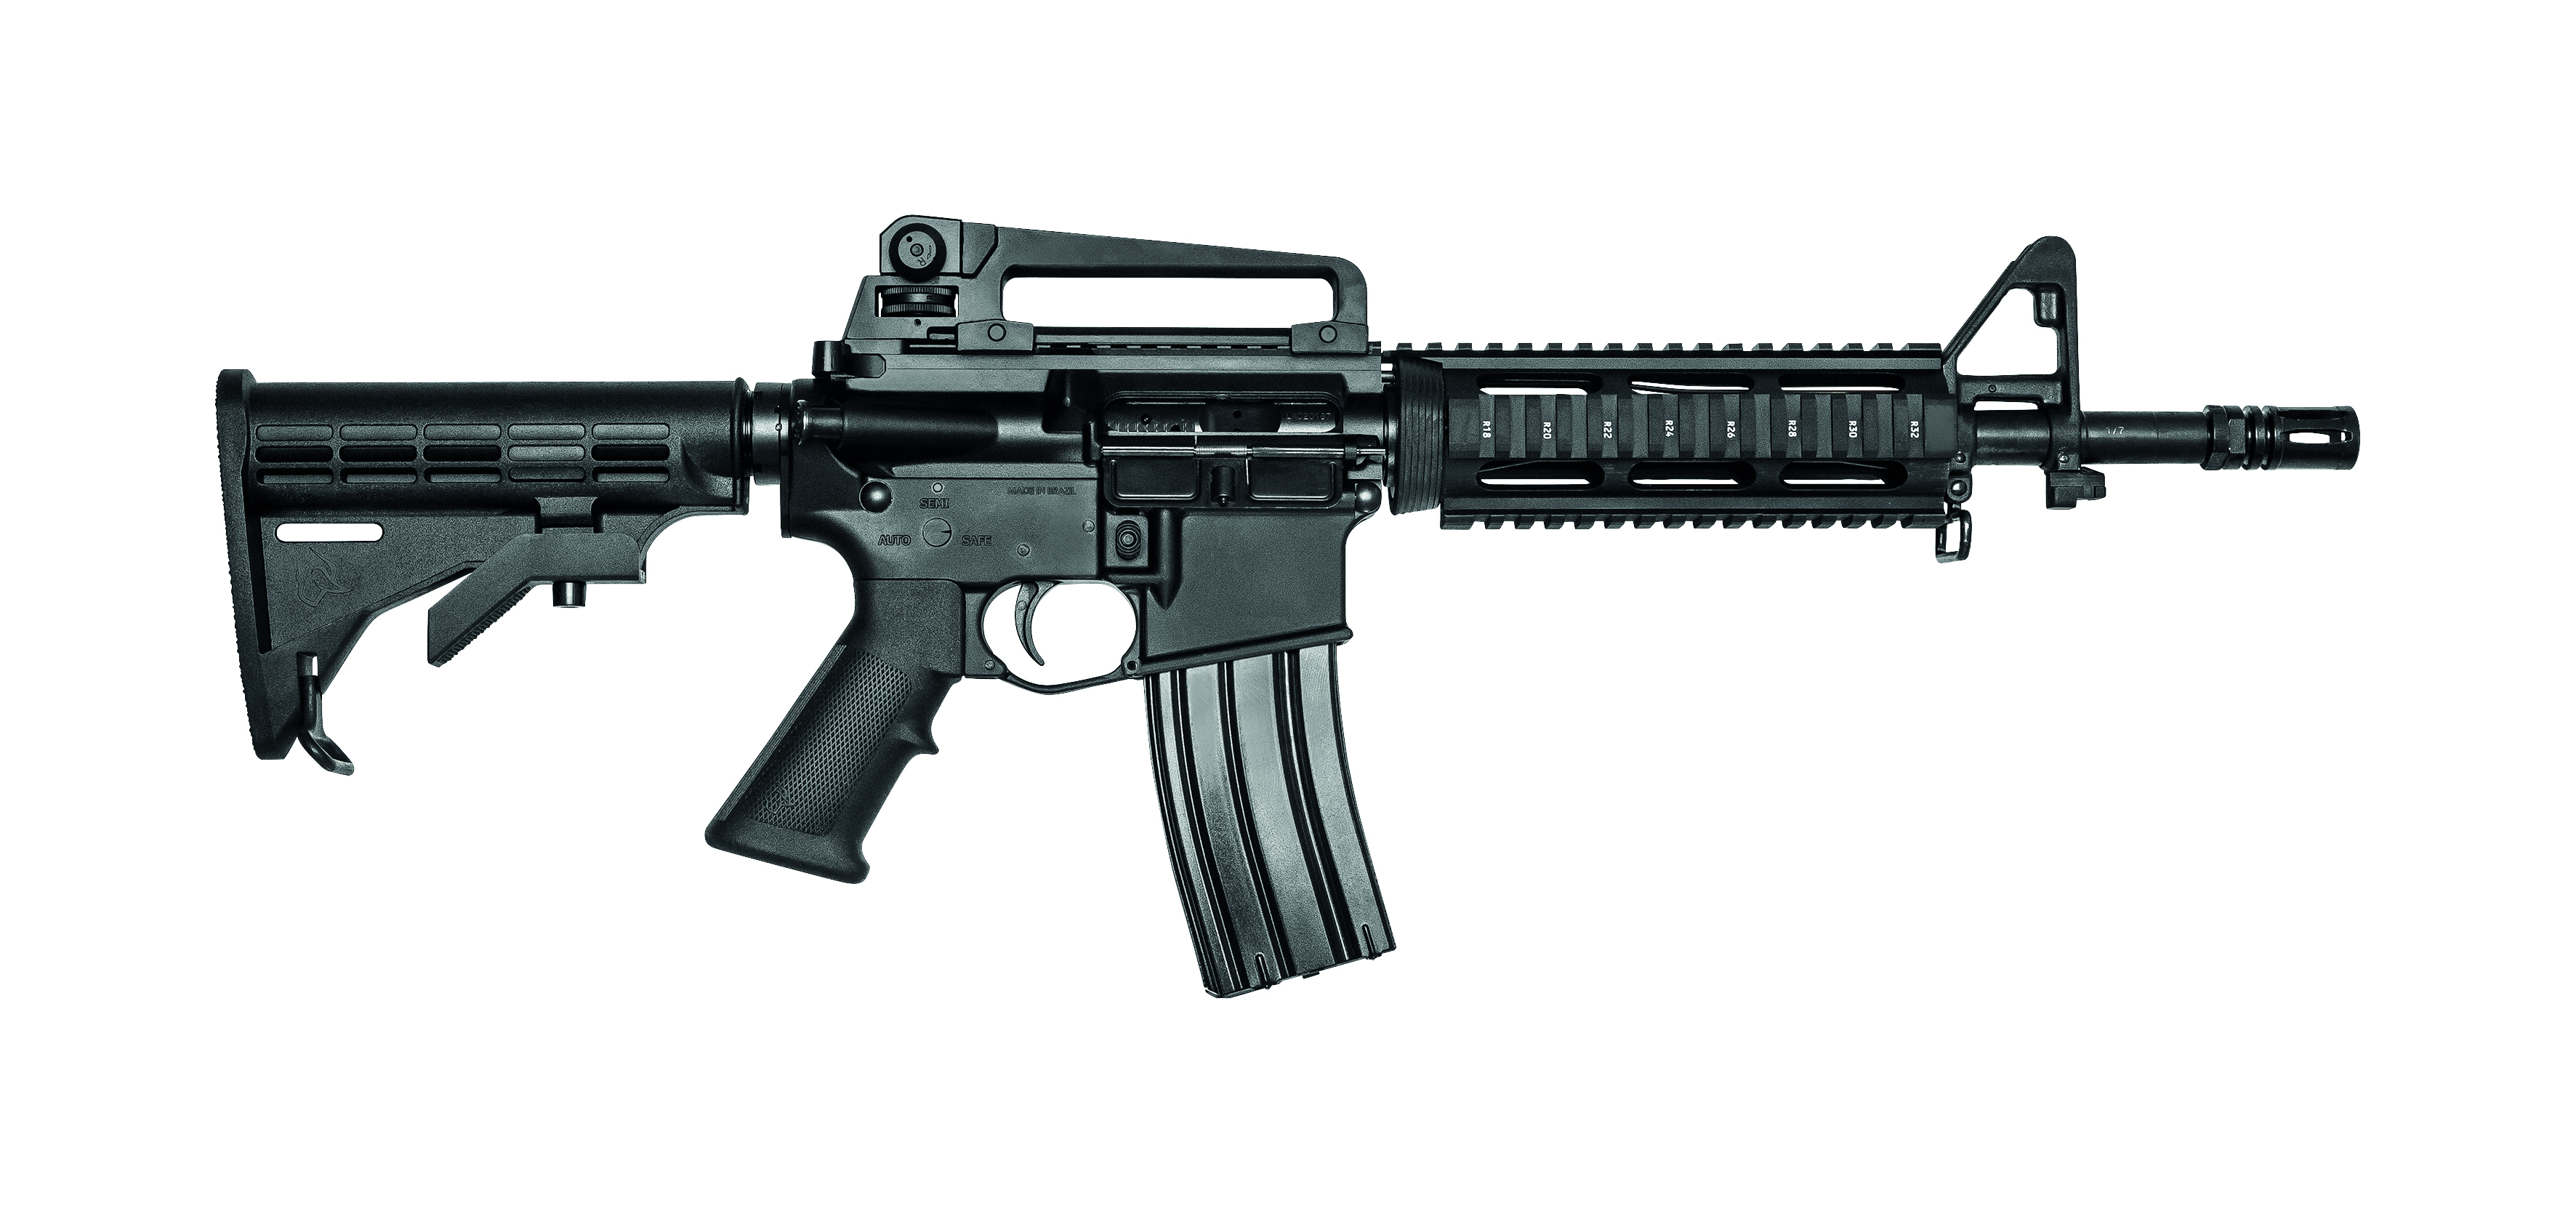 Decreto que regulamenta  armas no país libera compra de fuzil por qualquer cidadão